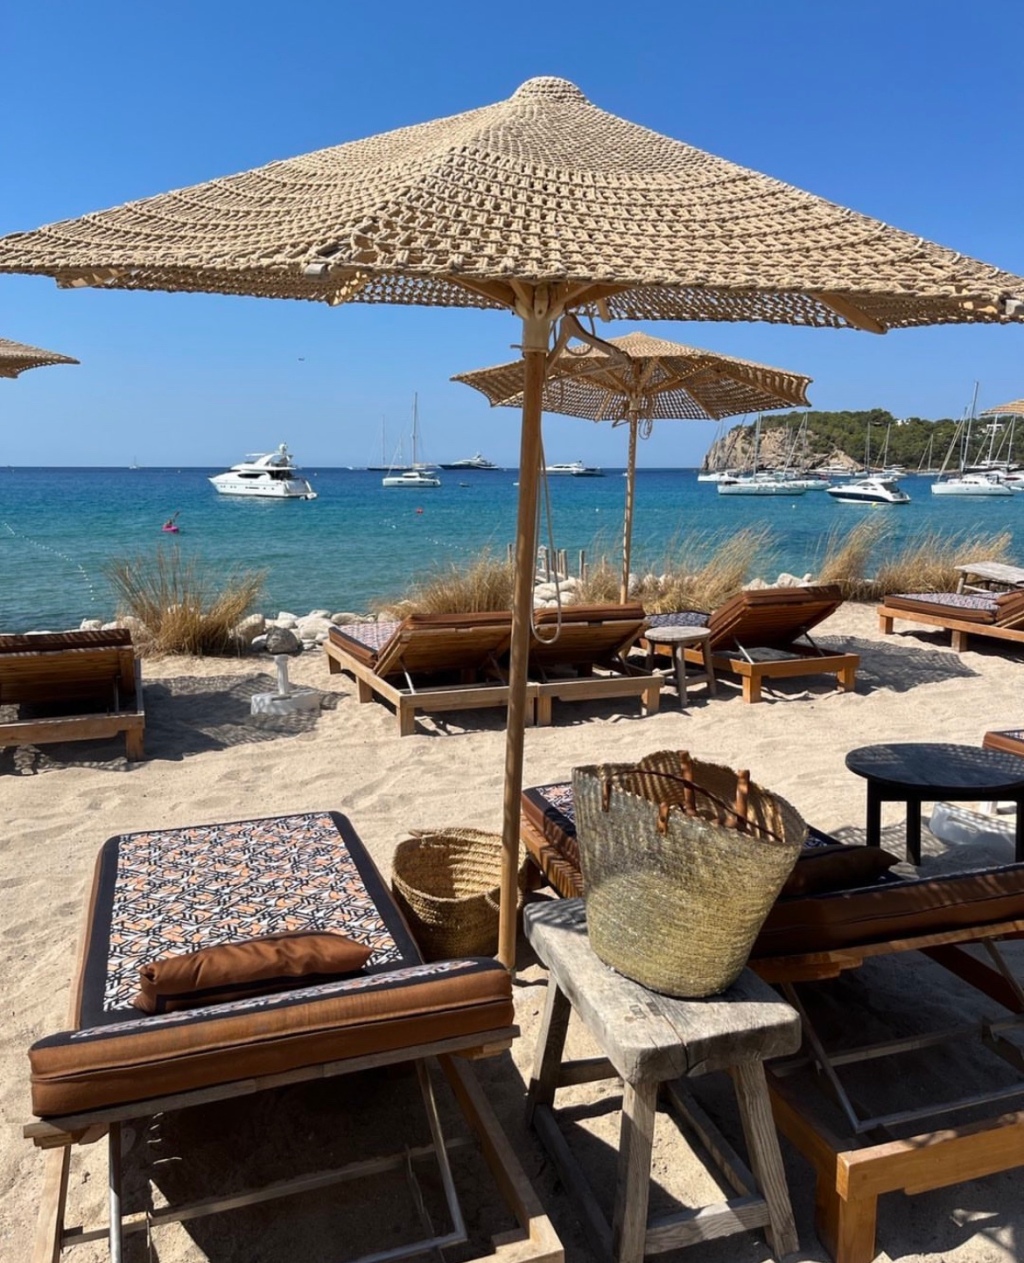 Beach Clubs e restaurantes para almoçar e passar o dia em Ibiza.